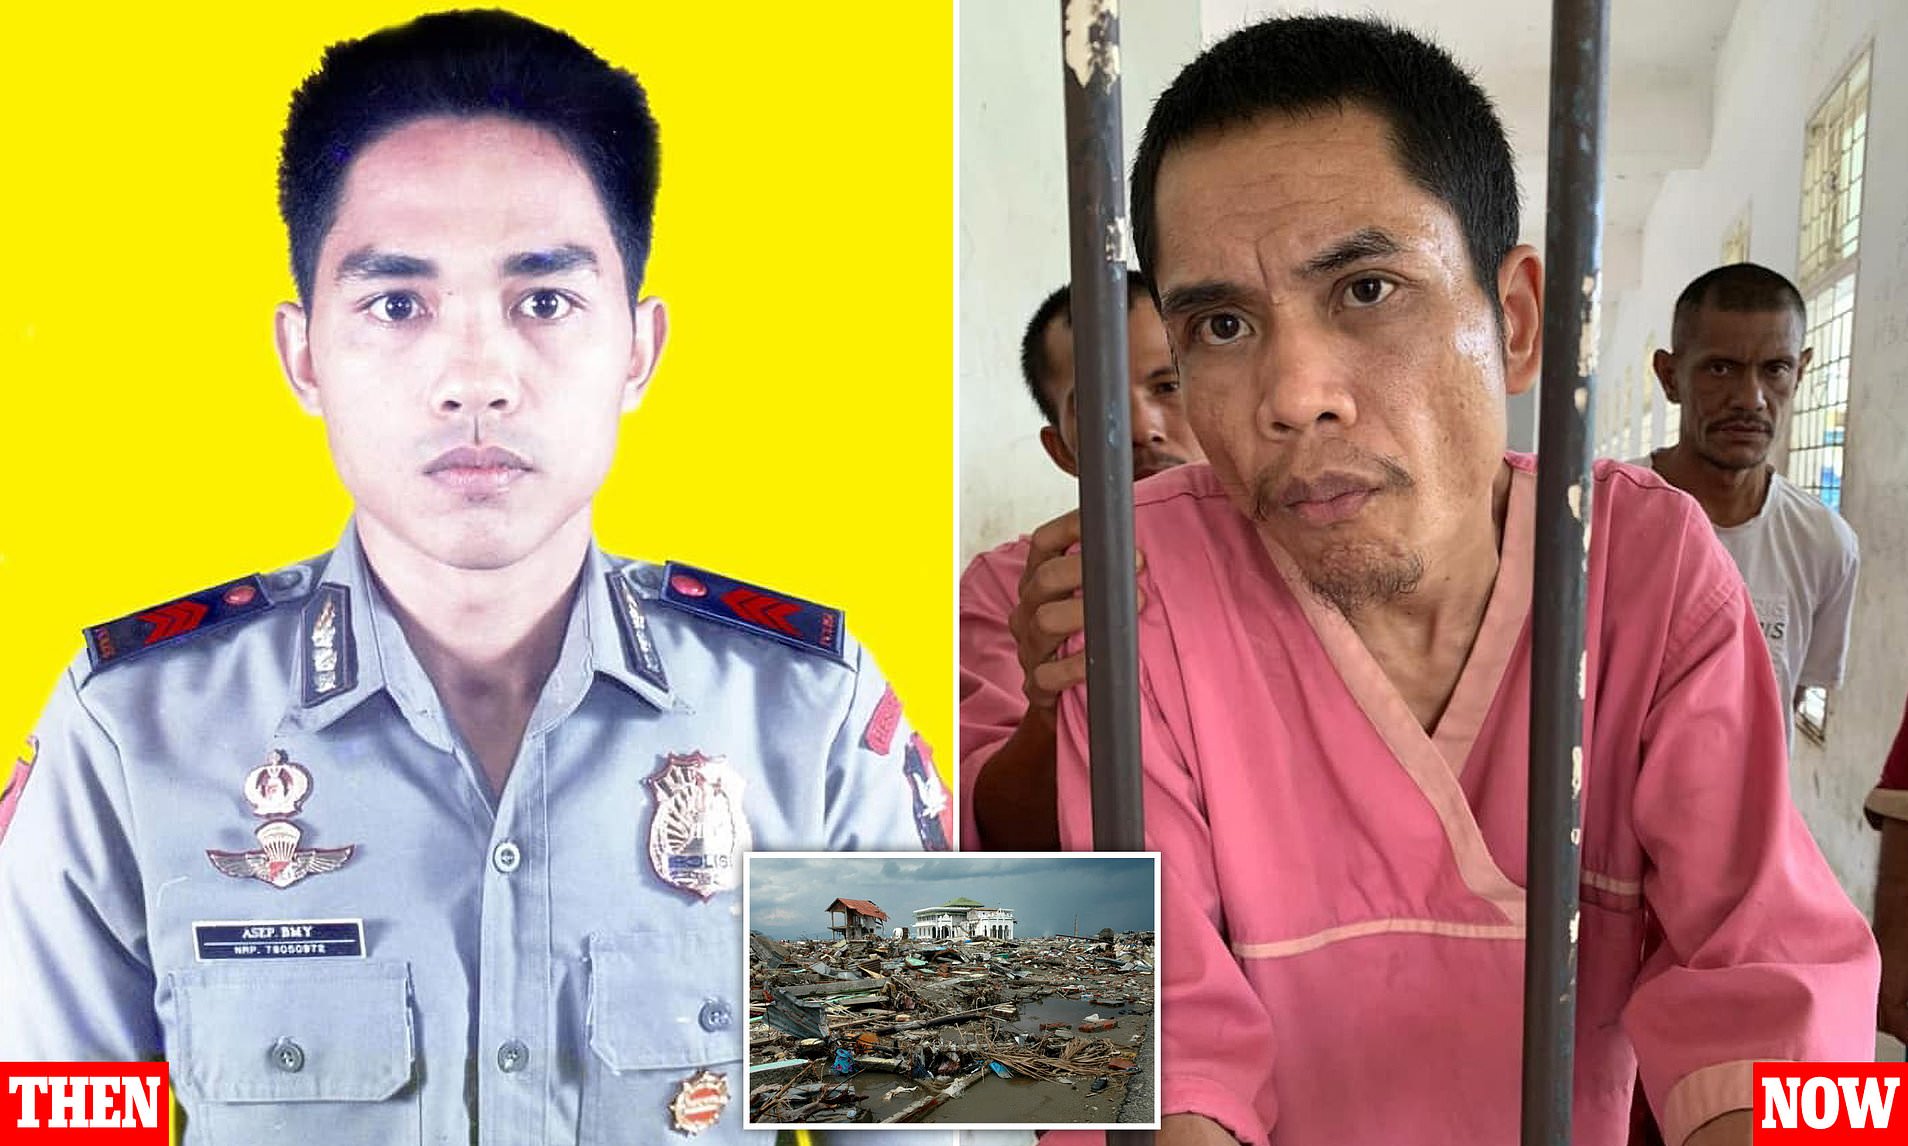 العثور على شرطي إندونيسي حياً